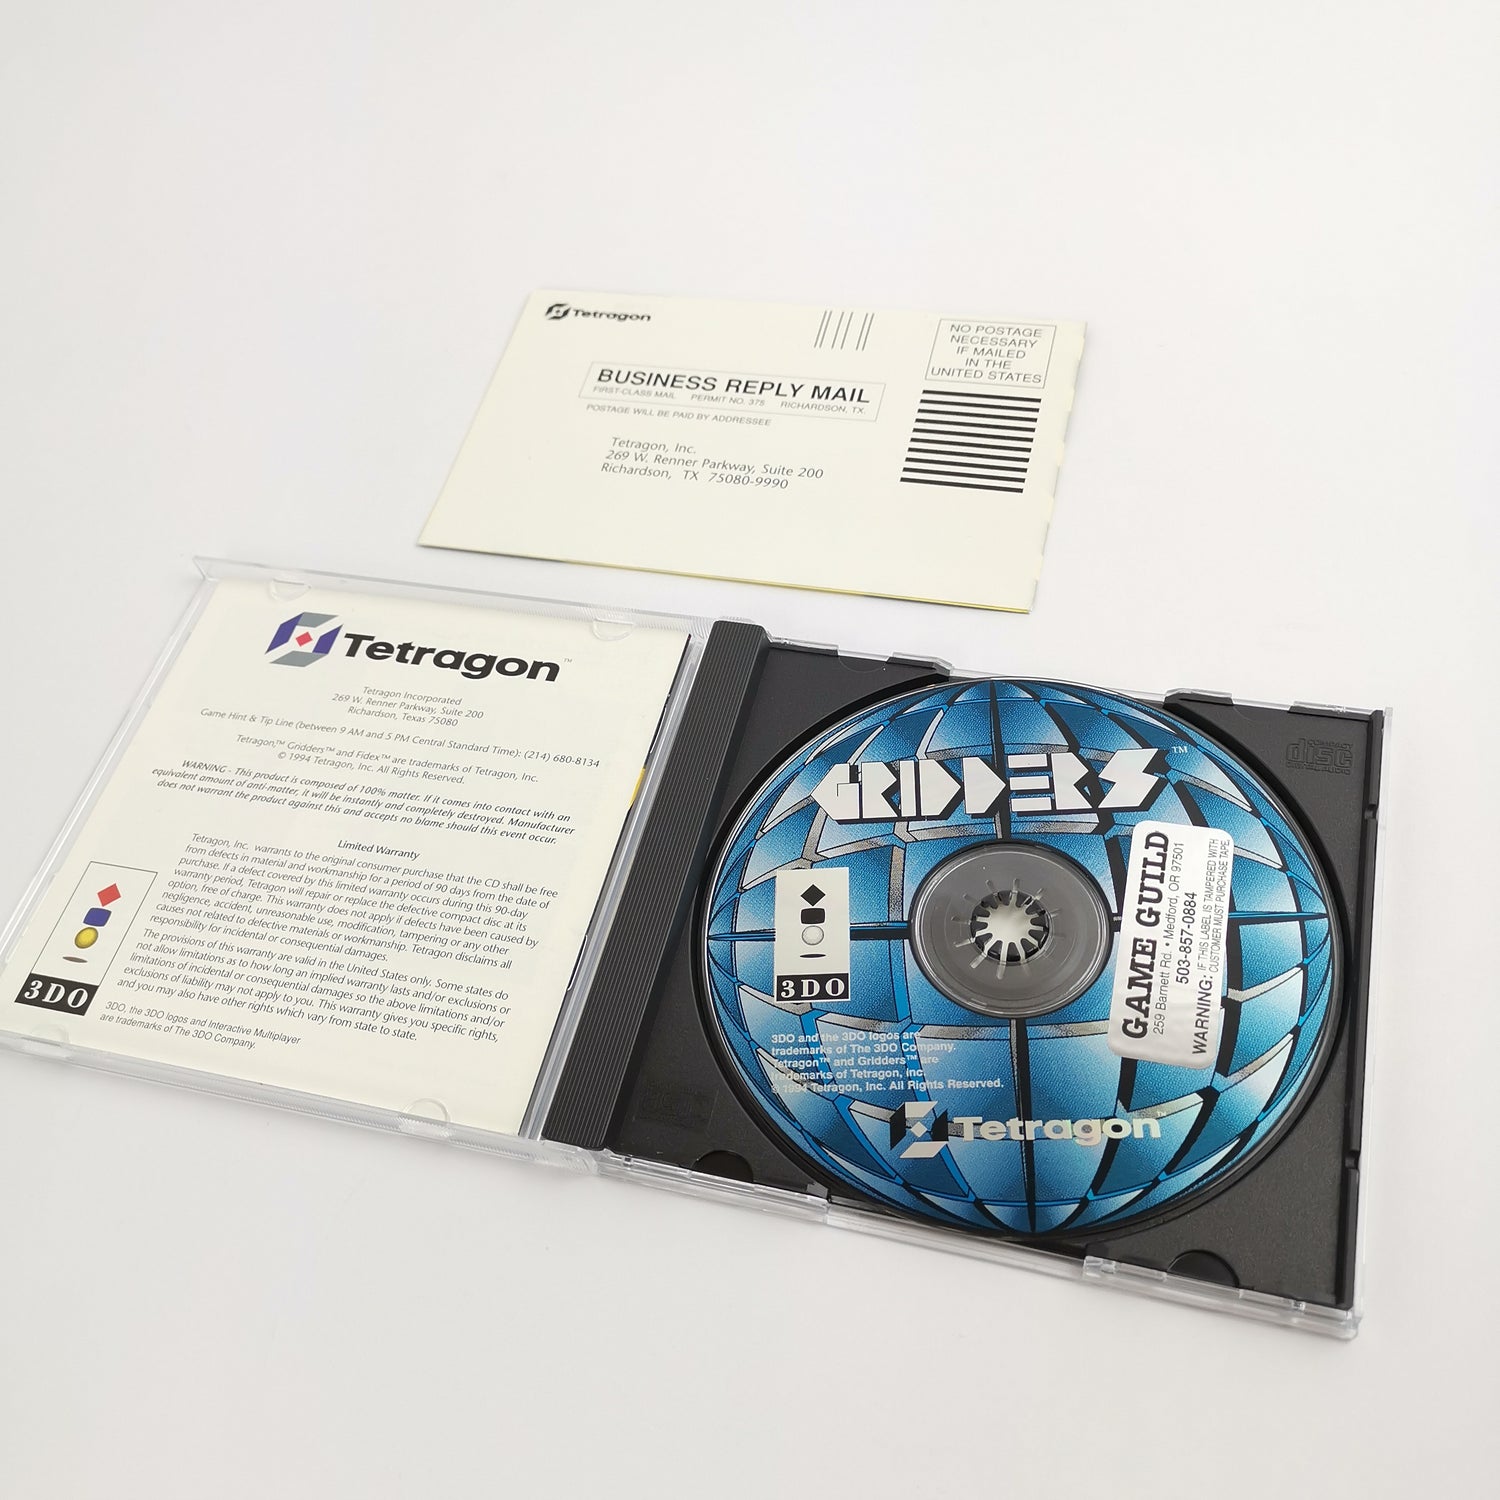 Panasonic 3DO game 